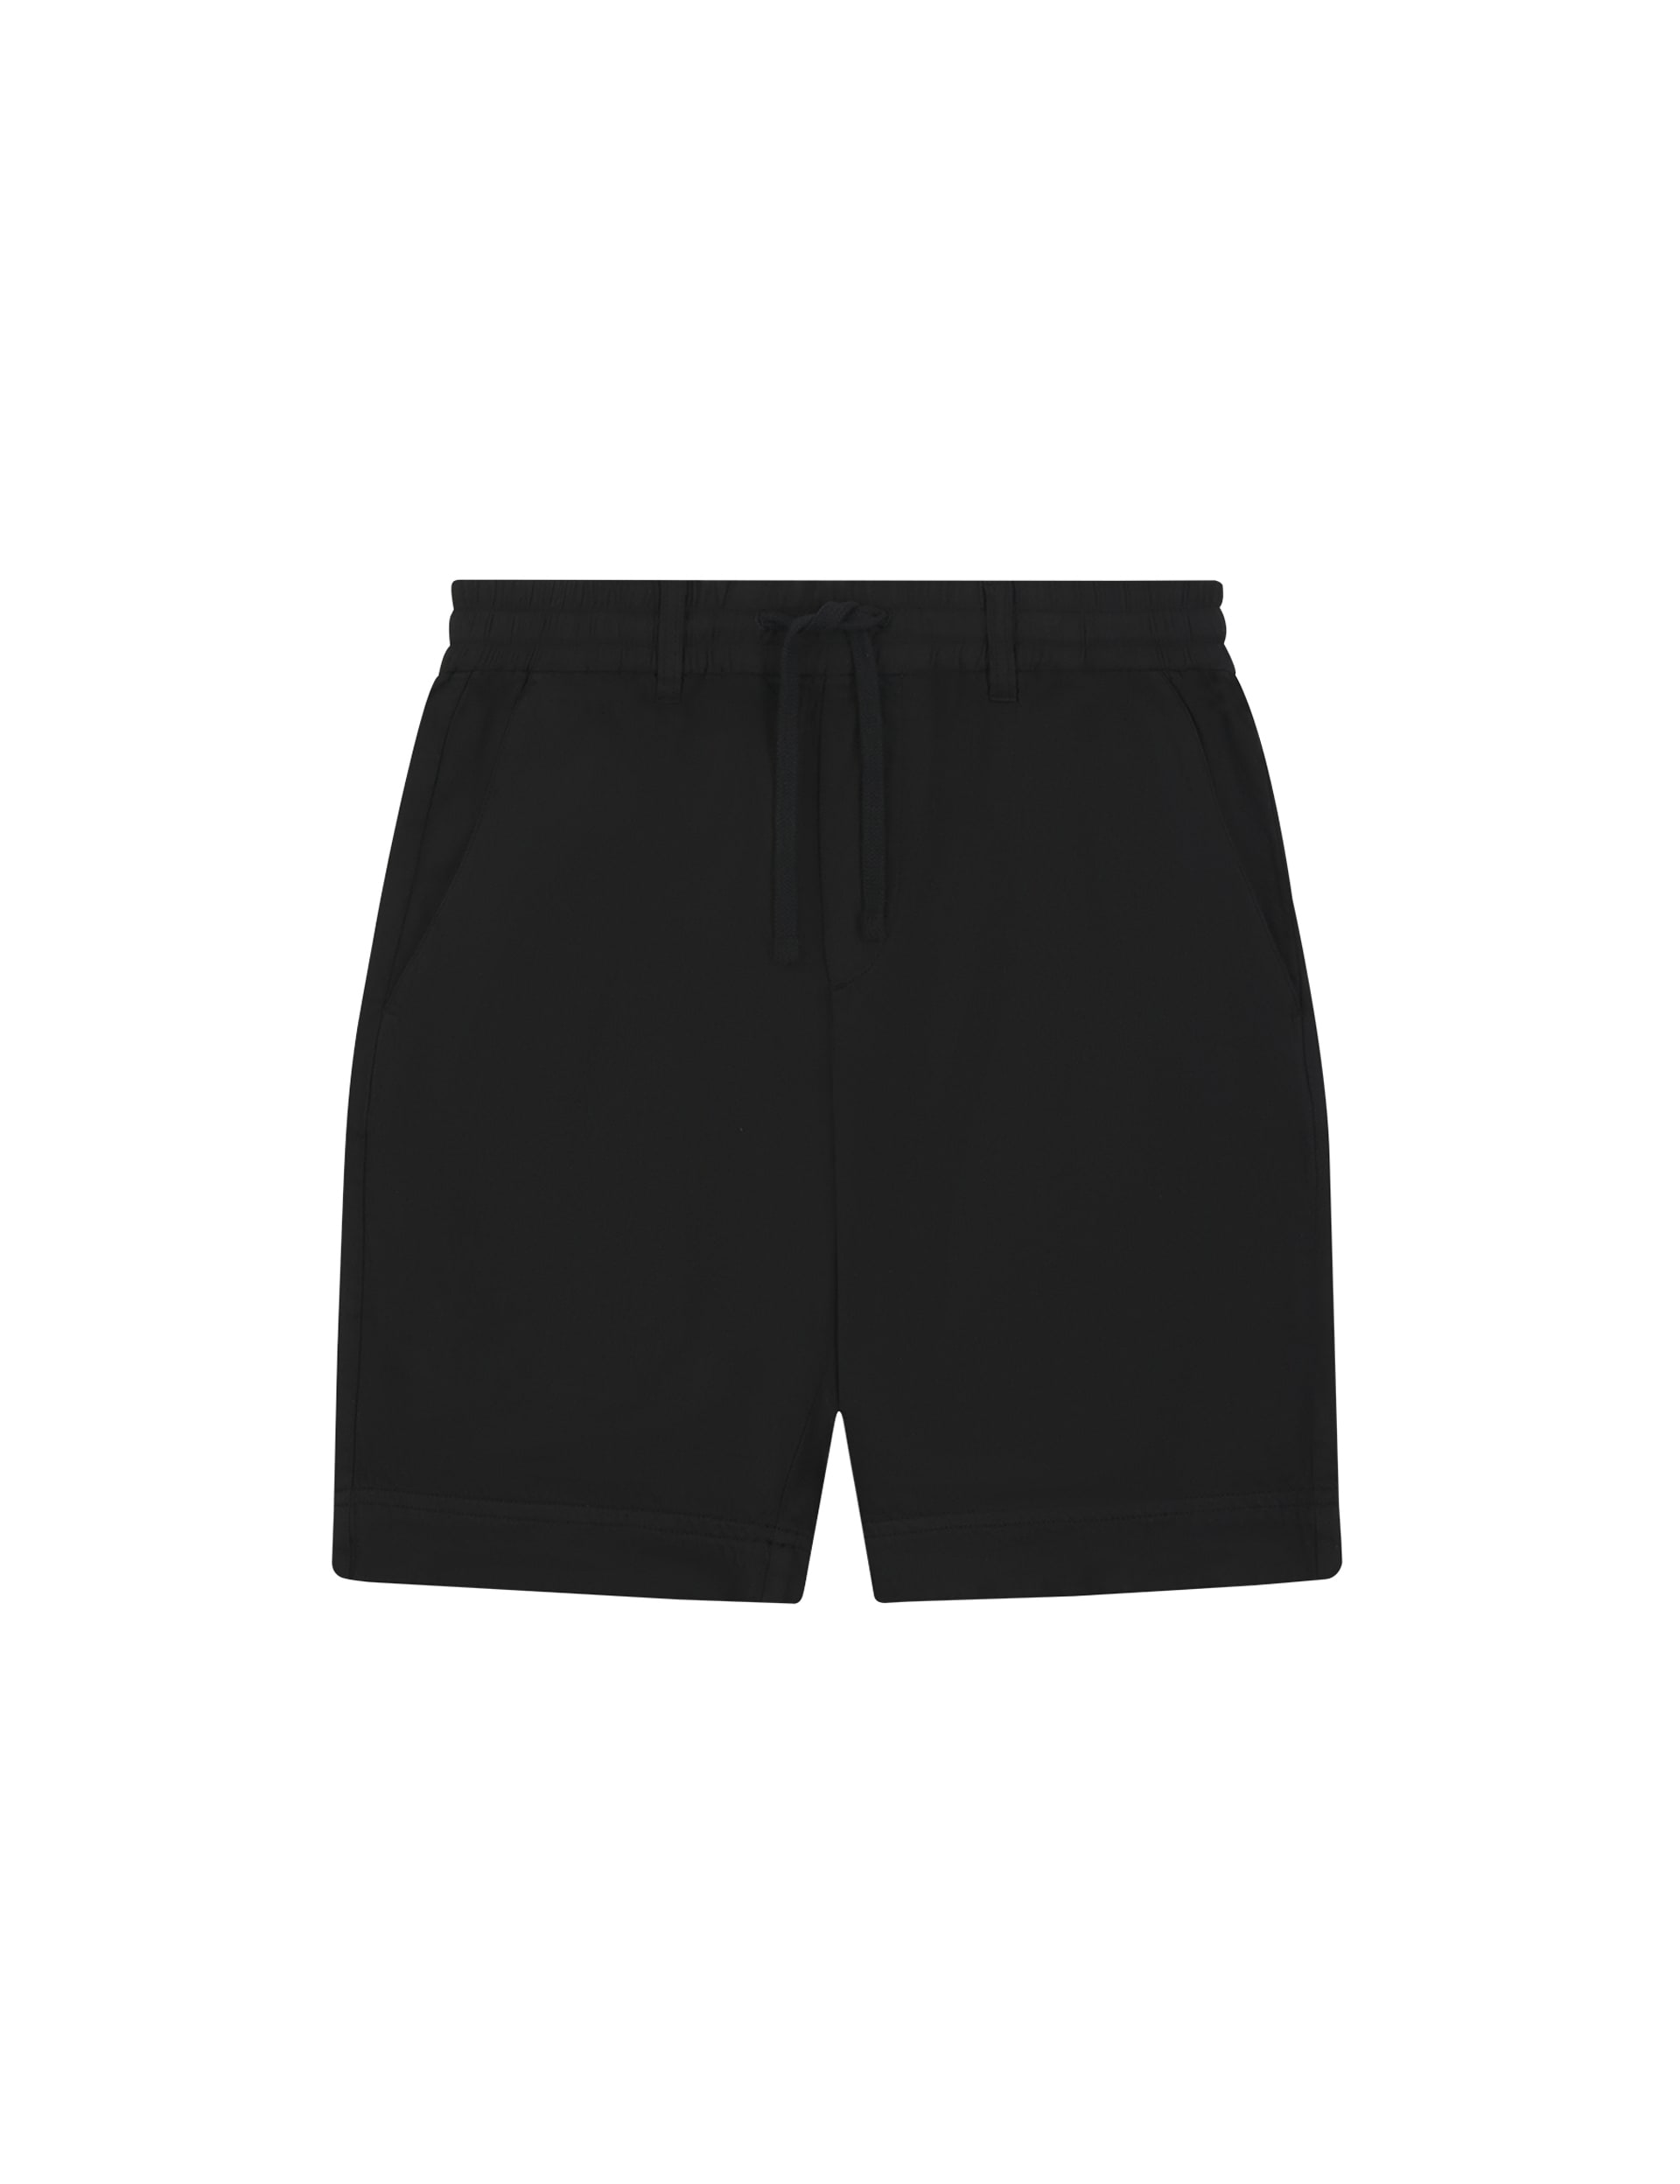 Regular Fit Linen Blend Shorts